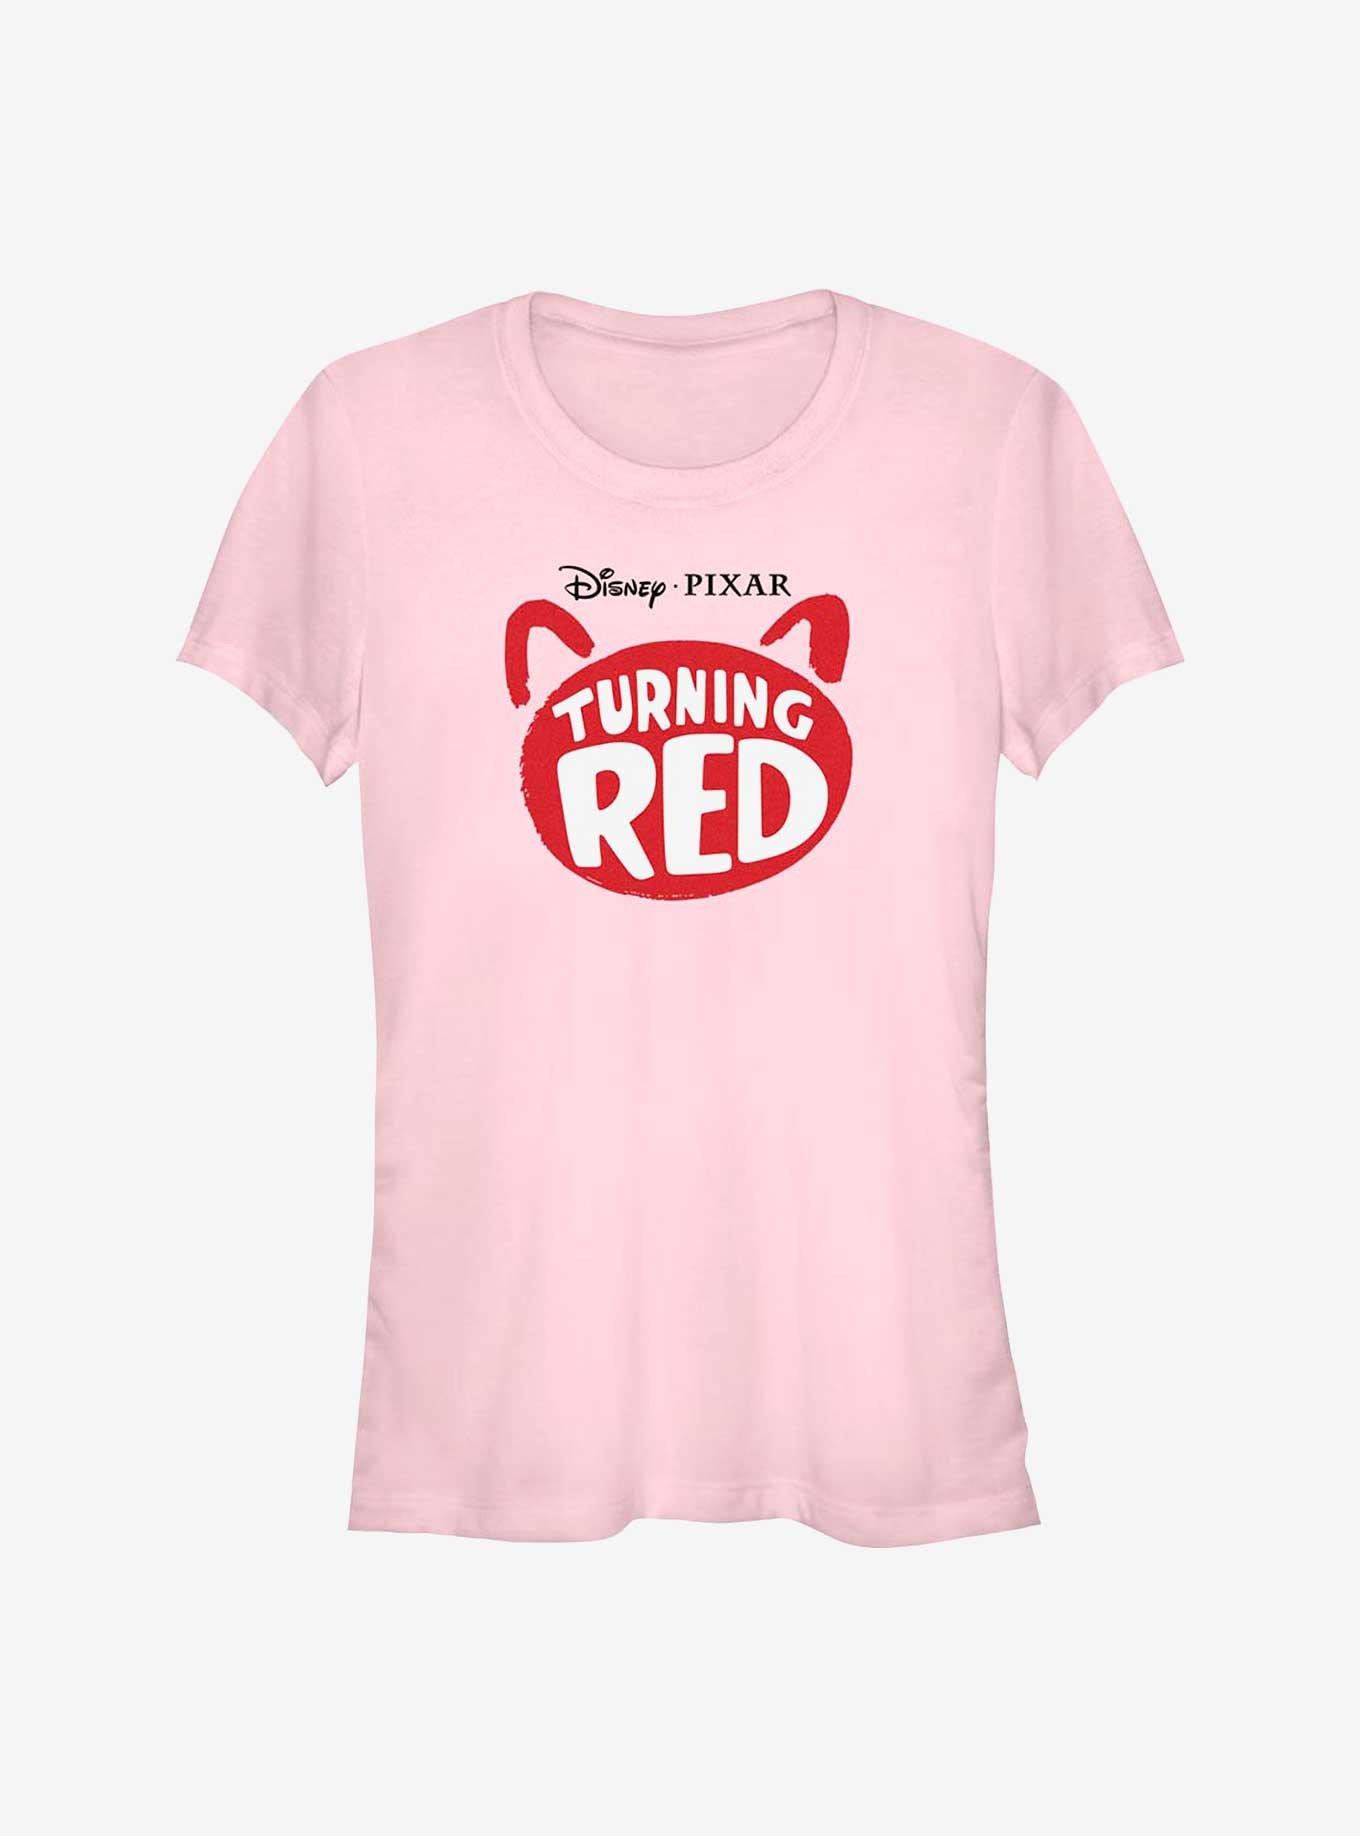 Disney Pixar Turning Red Logo Girls T-Shirt, LIGHT PINK, hi-res